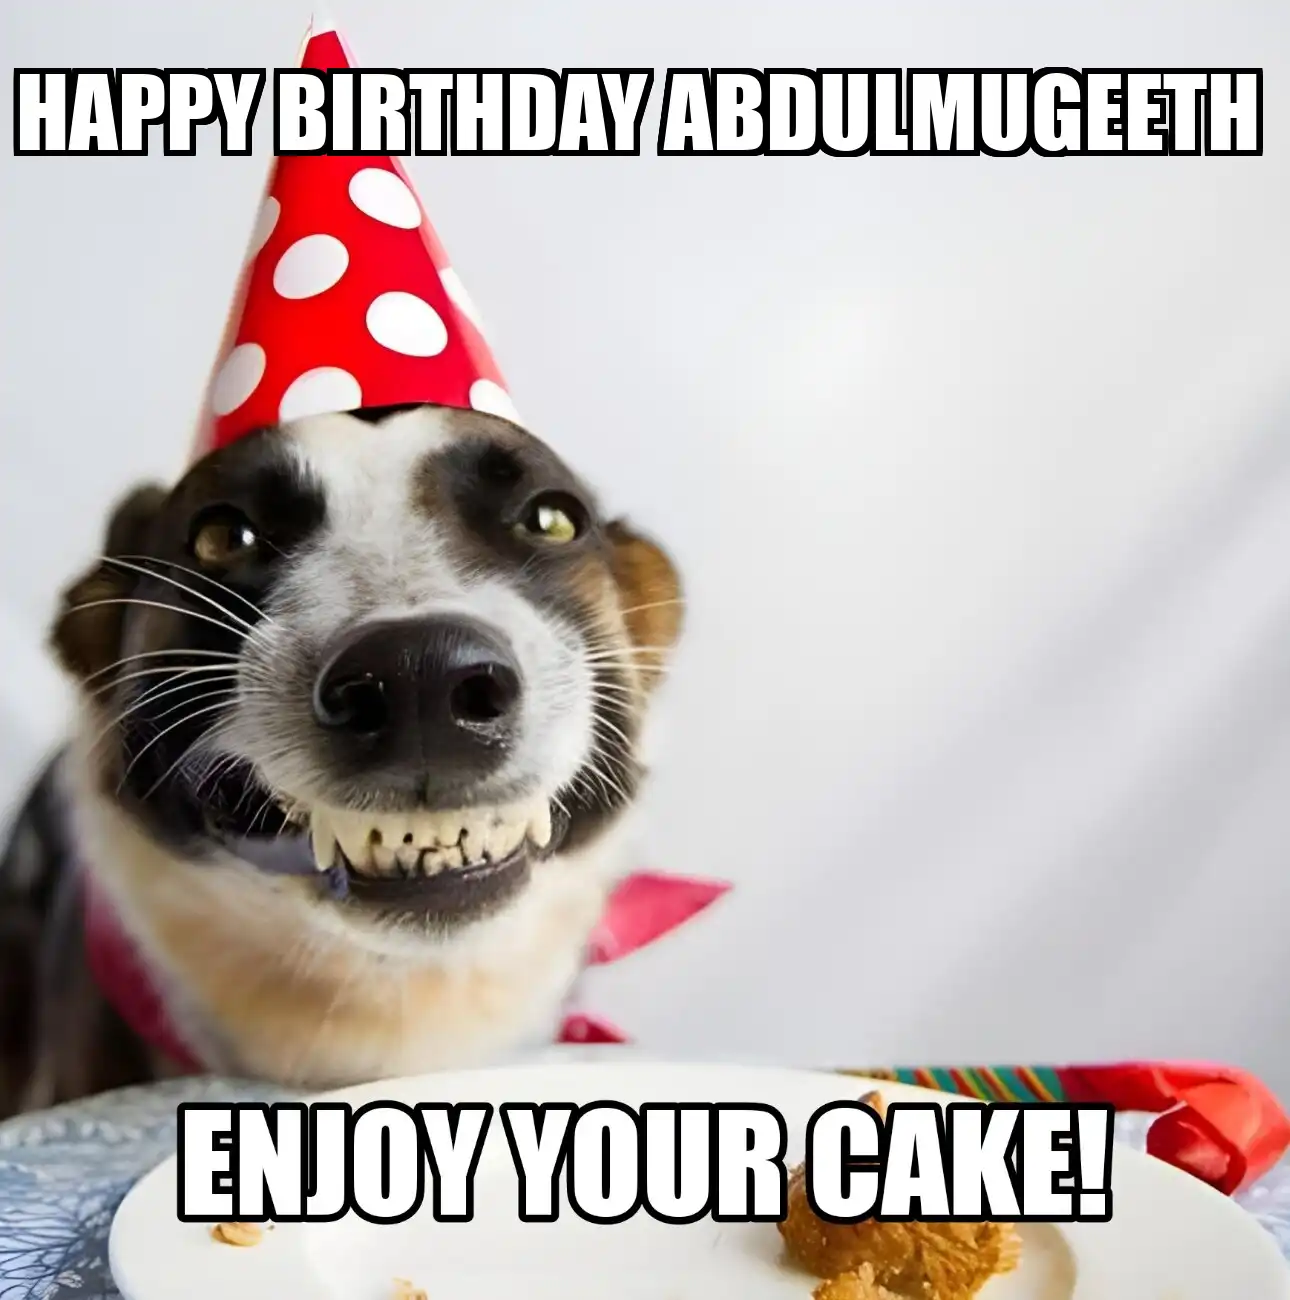 Happy Birthday Abdulmugeeth Enjoy Your Cake Dog Meme